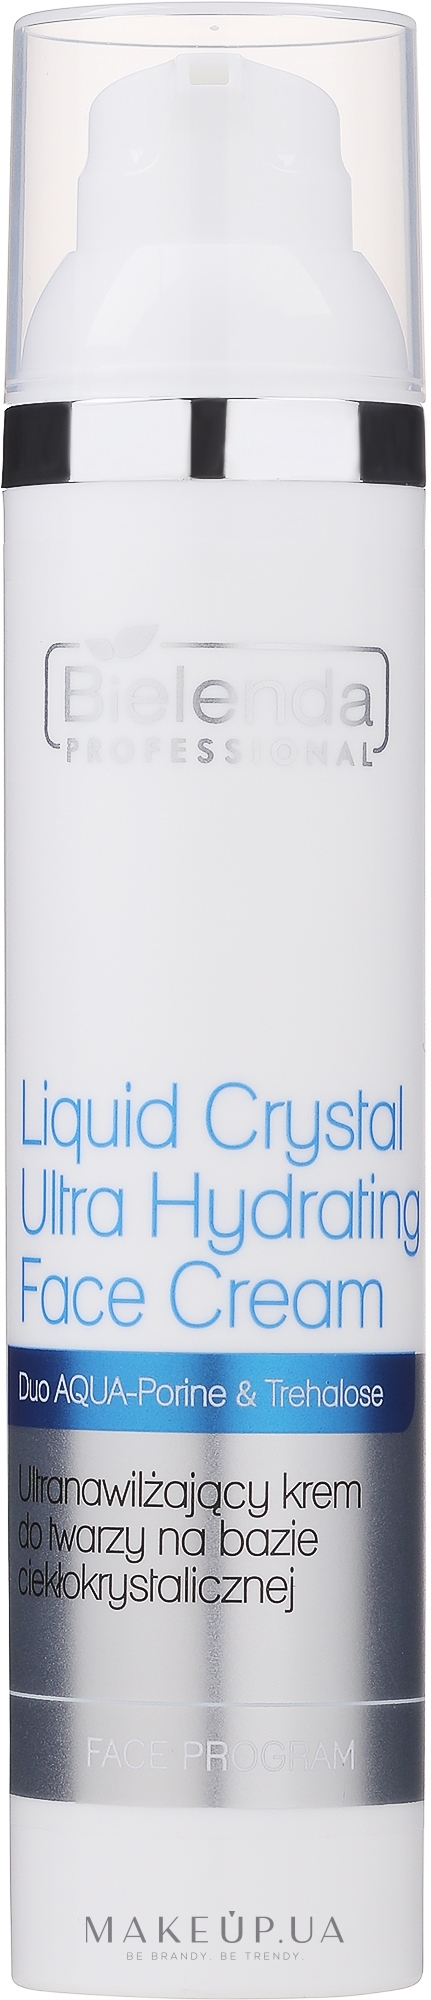 Ультраувлажняющий крем для лица на жидкокристаллической базе - Bielenda Professional Face Program Liquid Crystal Ultra Hydrating Face Cream — фото 100ml